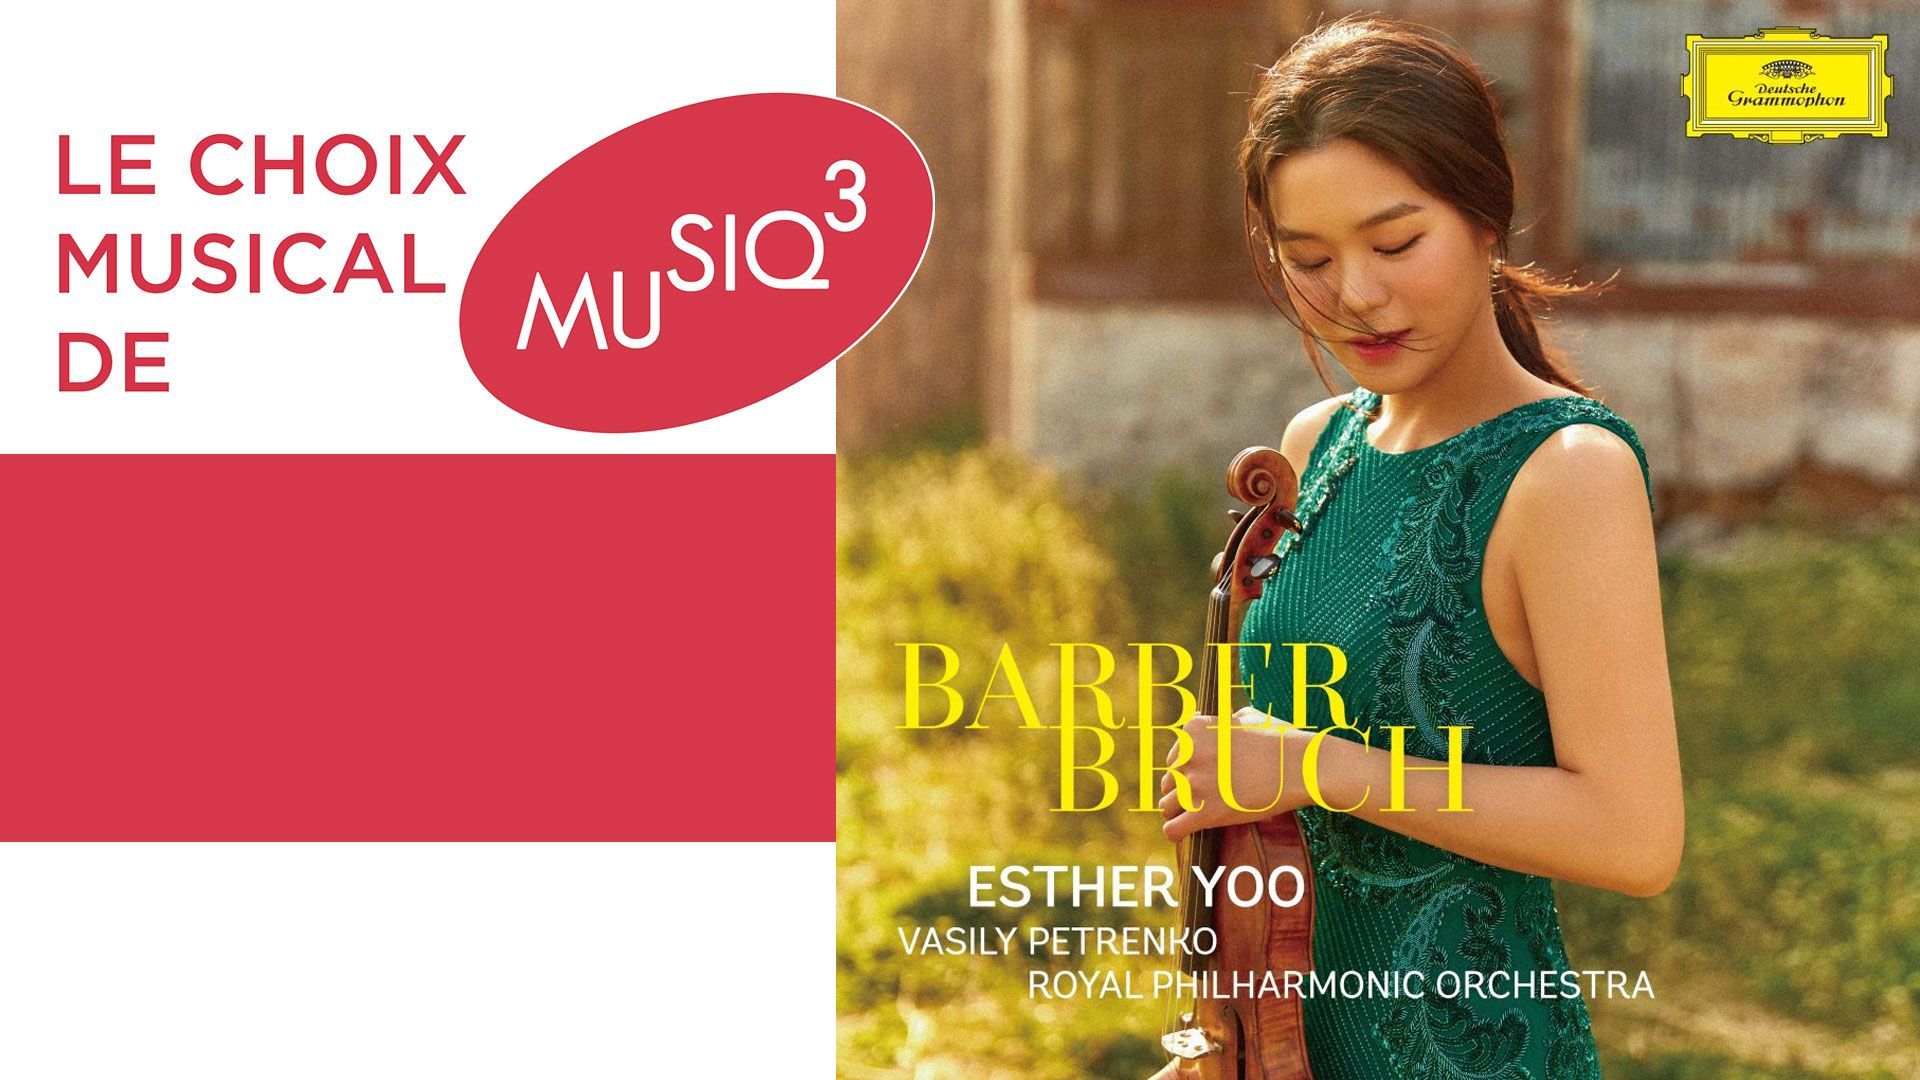 Esther Yoo, onze ans après le Concours Reine Elisabeth, revient avec les concertos pour violon de Barber et Bruch